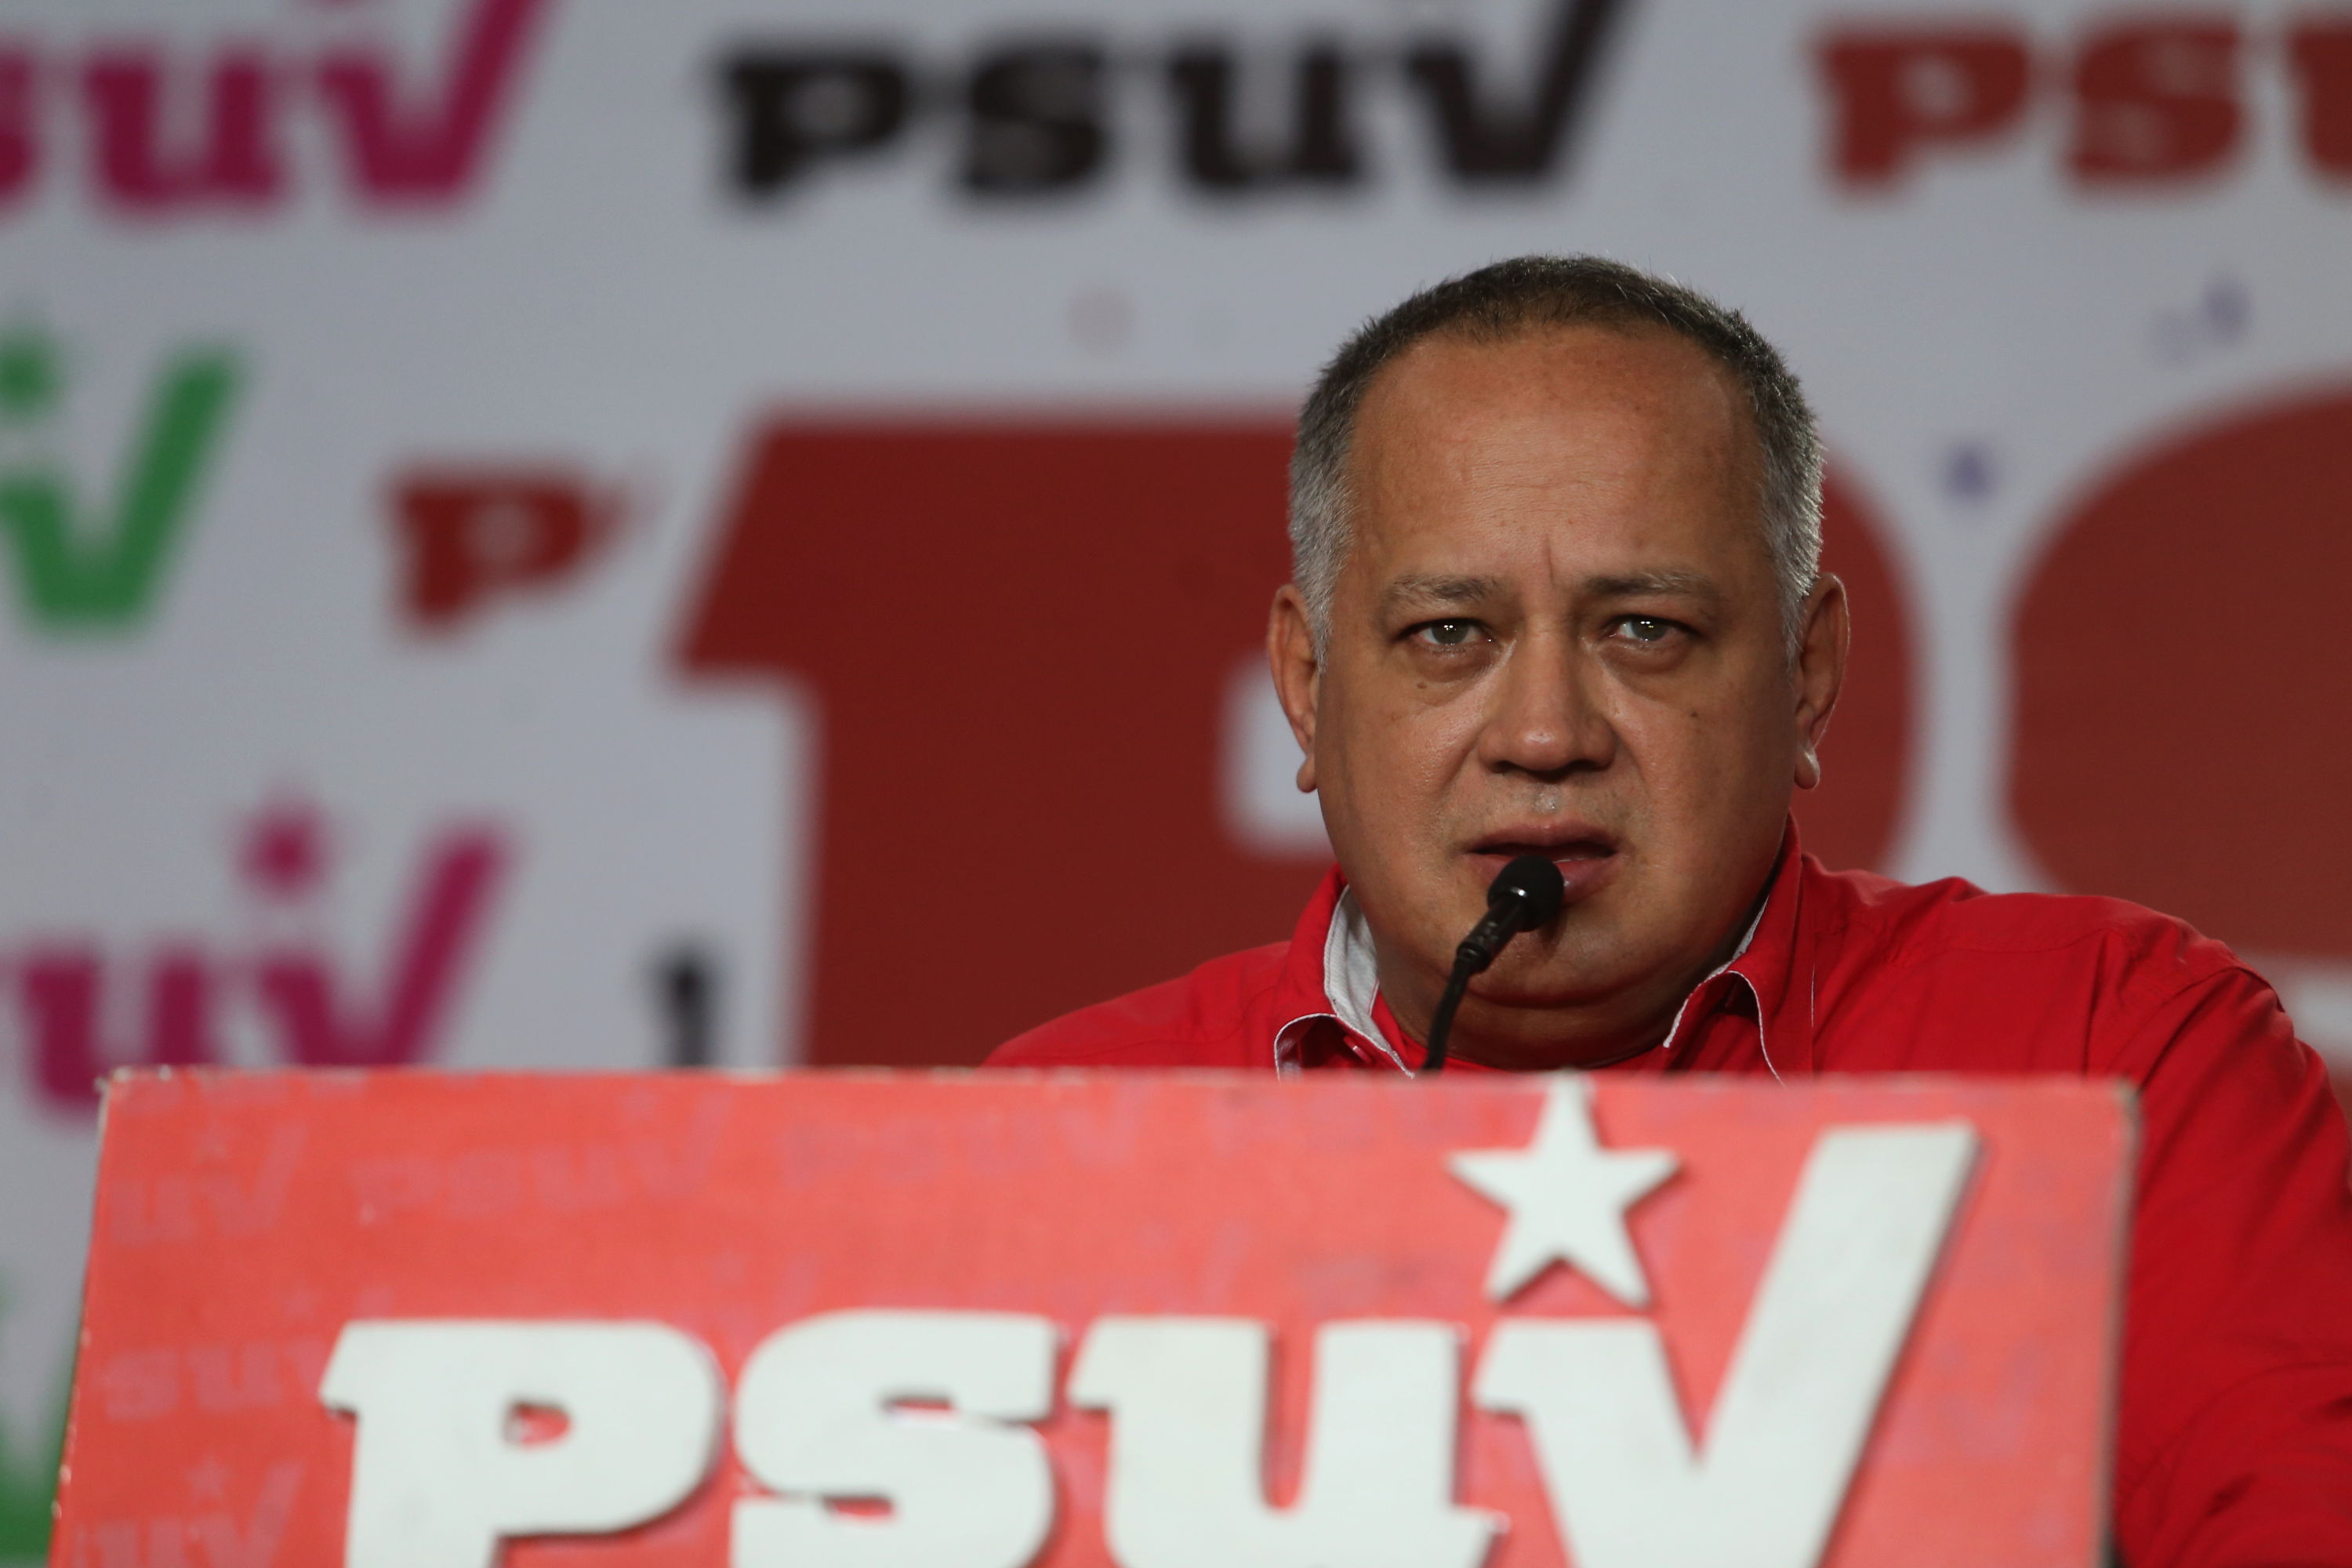 El chiste del día: Diosdado asegura que Guaidó es un dictador porque “quiere tener el control” (VIDEO)